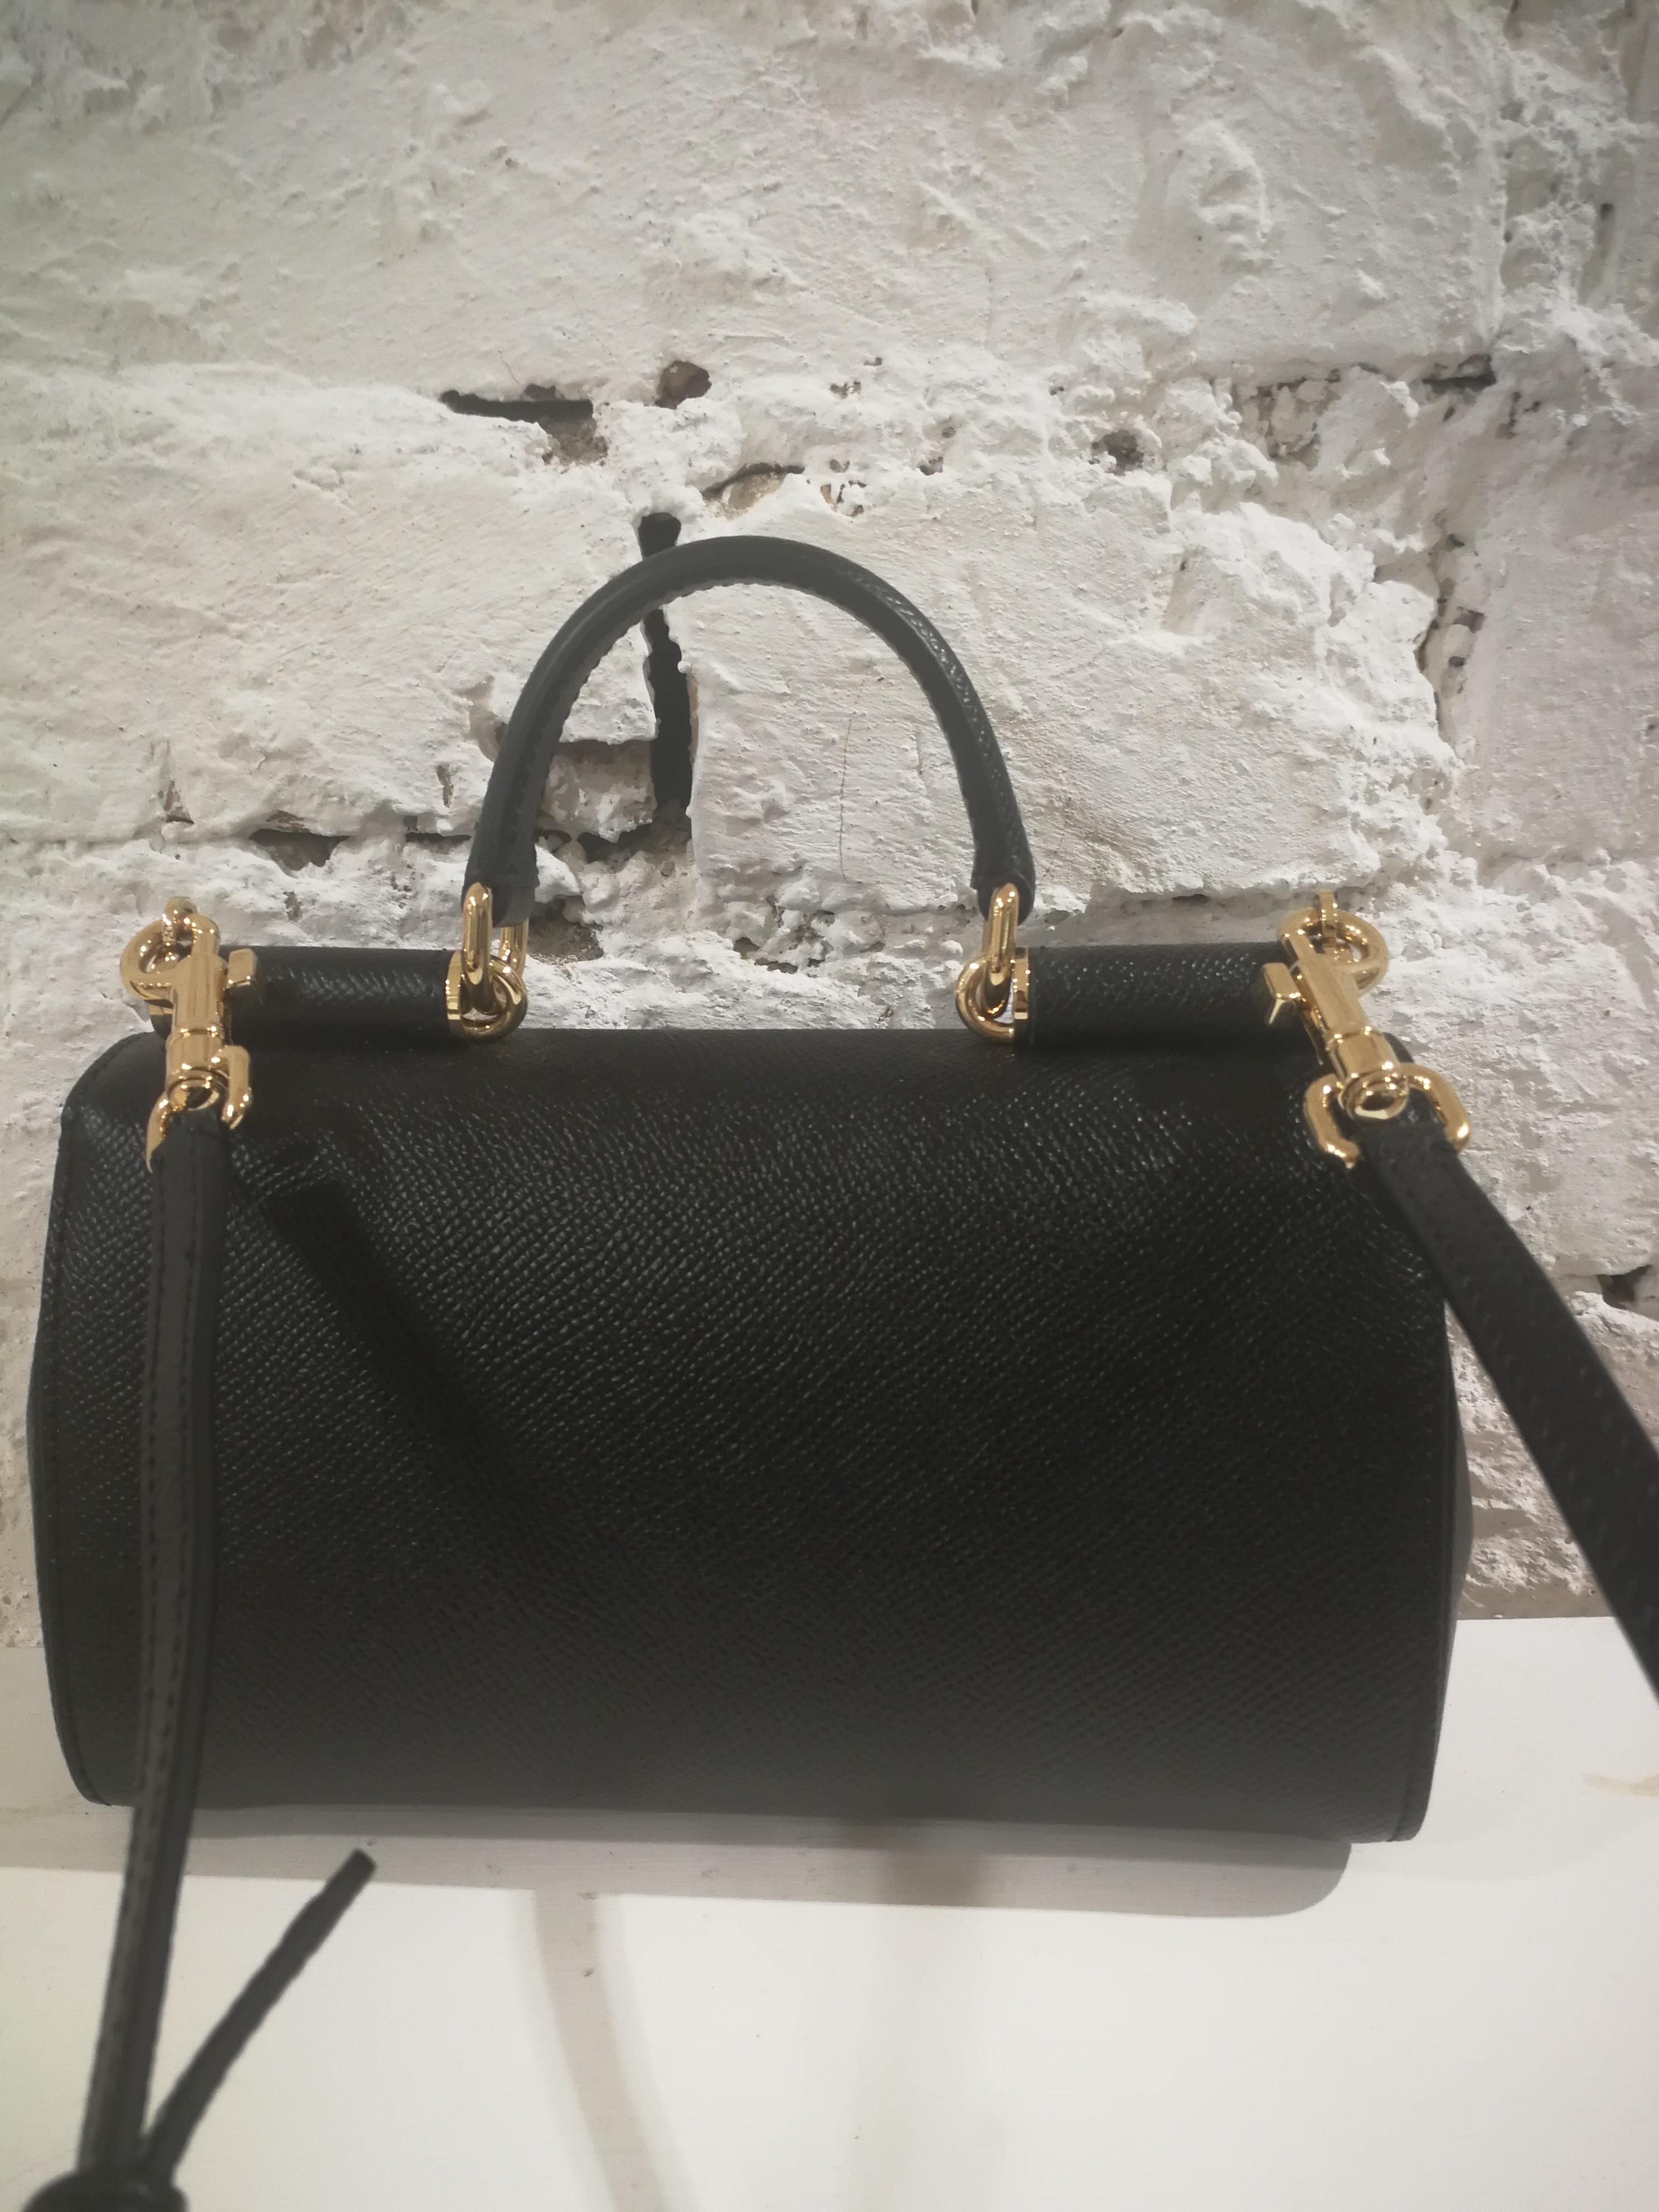 Women's or Men's Dolce & Gabbana Black Leather Shoulder Bag NWOT